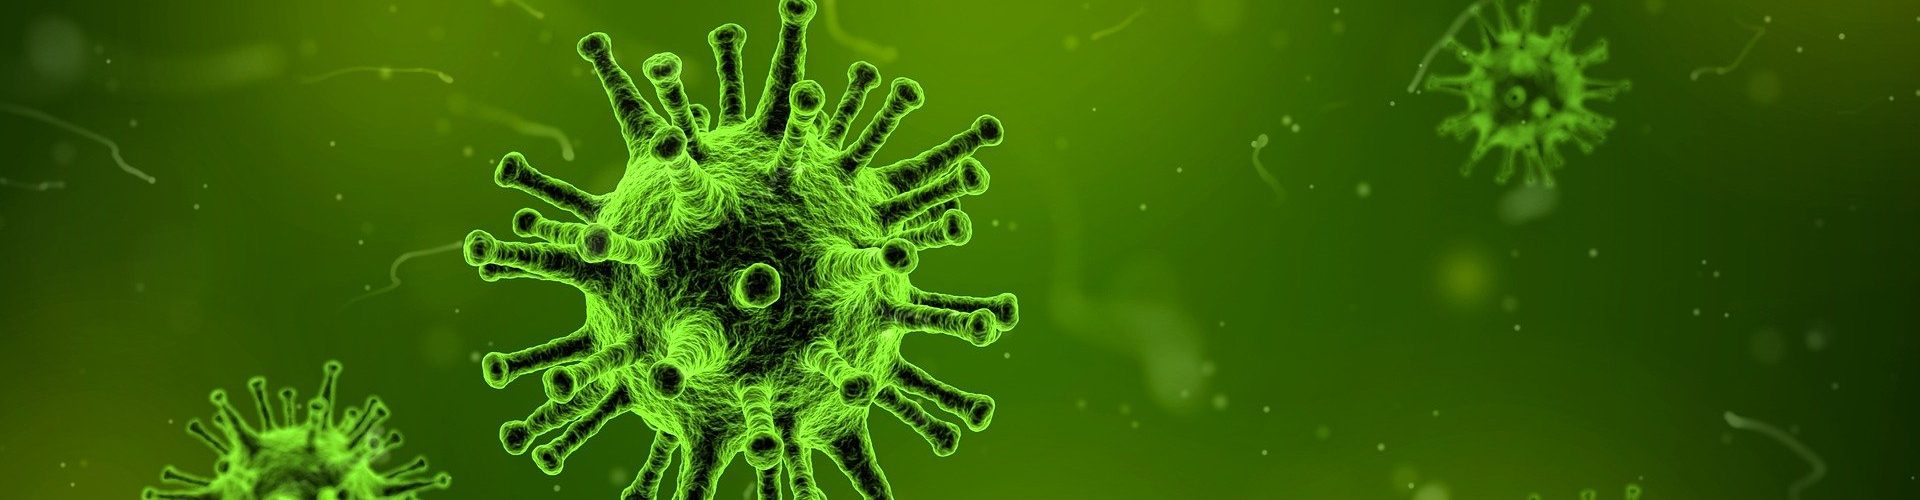 Neue Methode identifiziert T-Zellen von Covid-19-Erkrankten